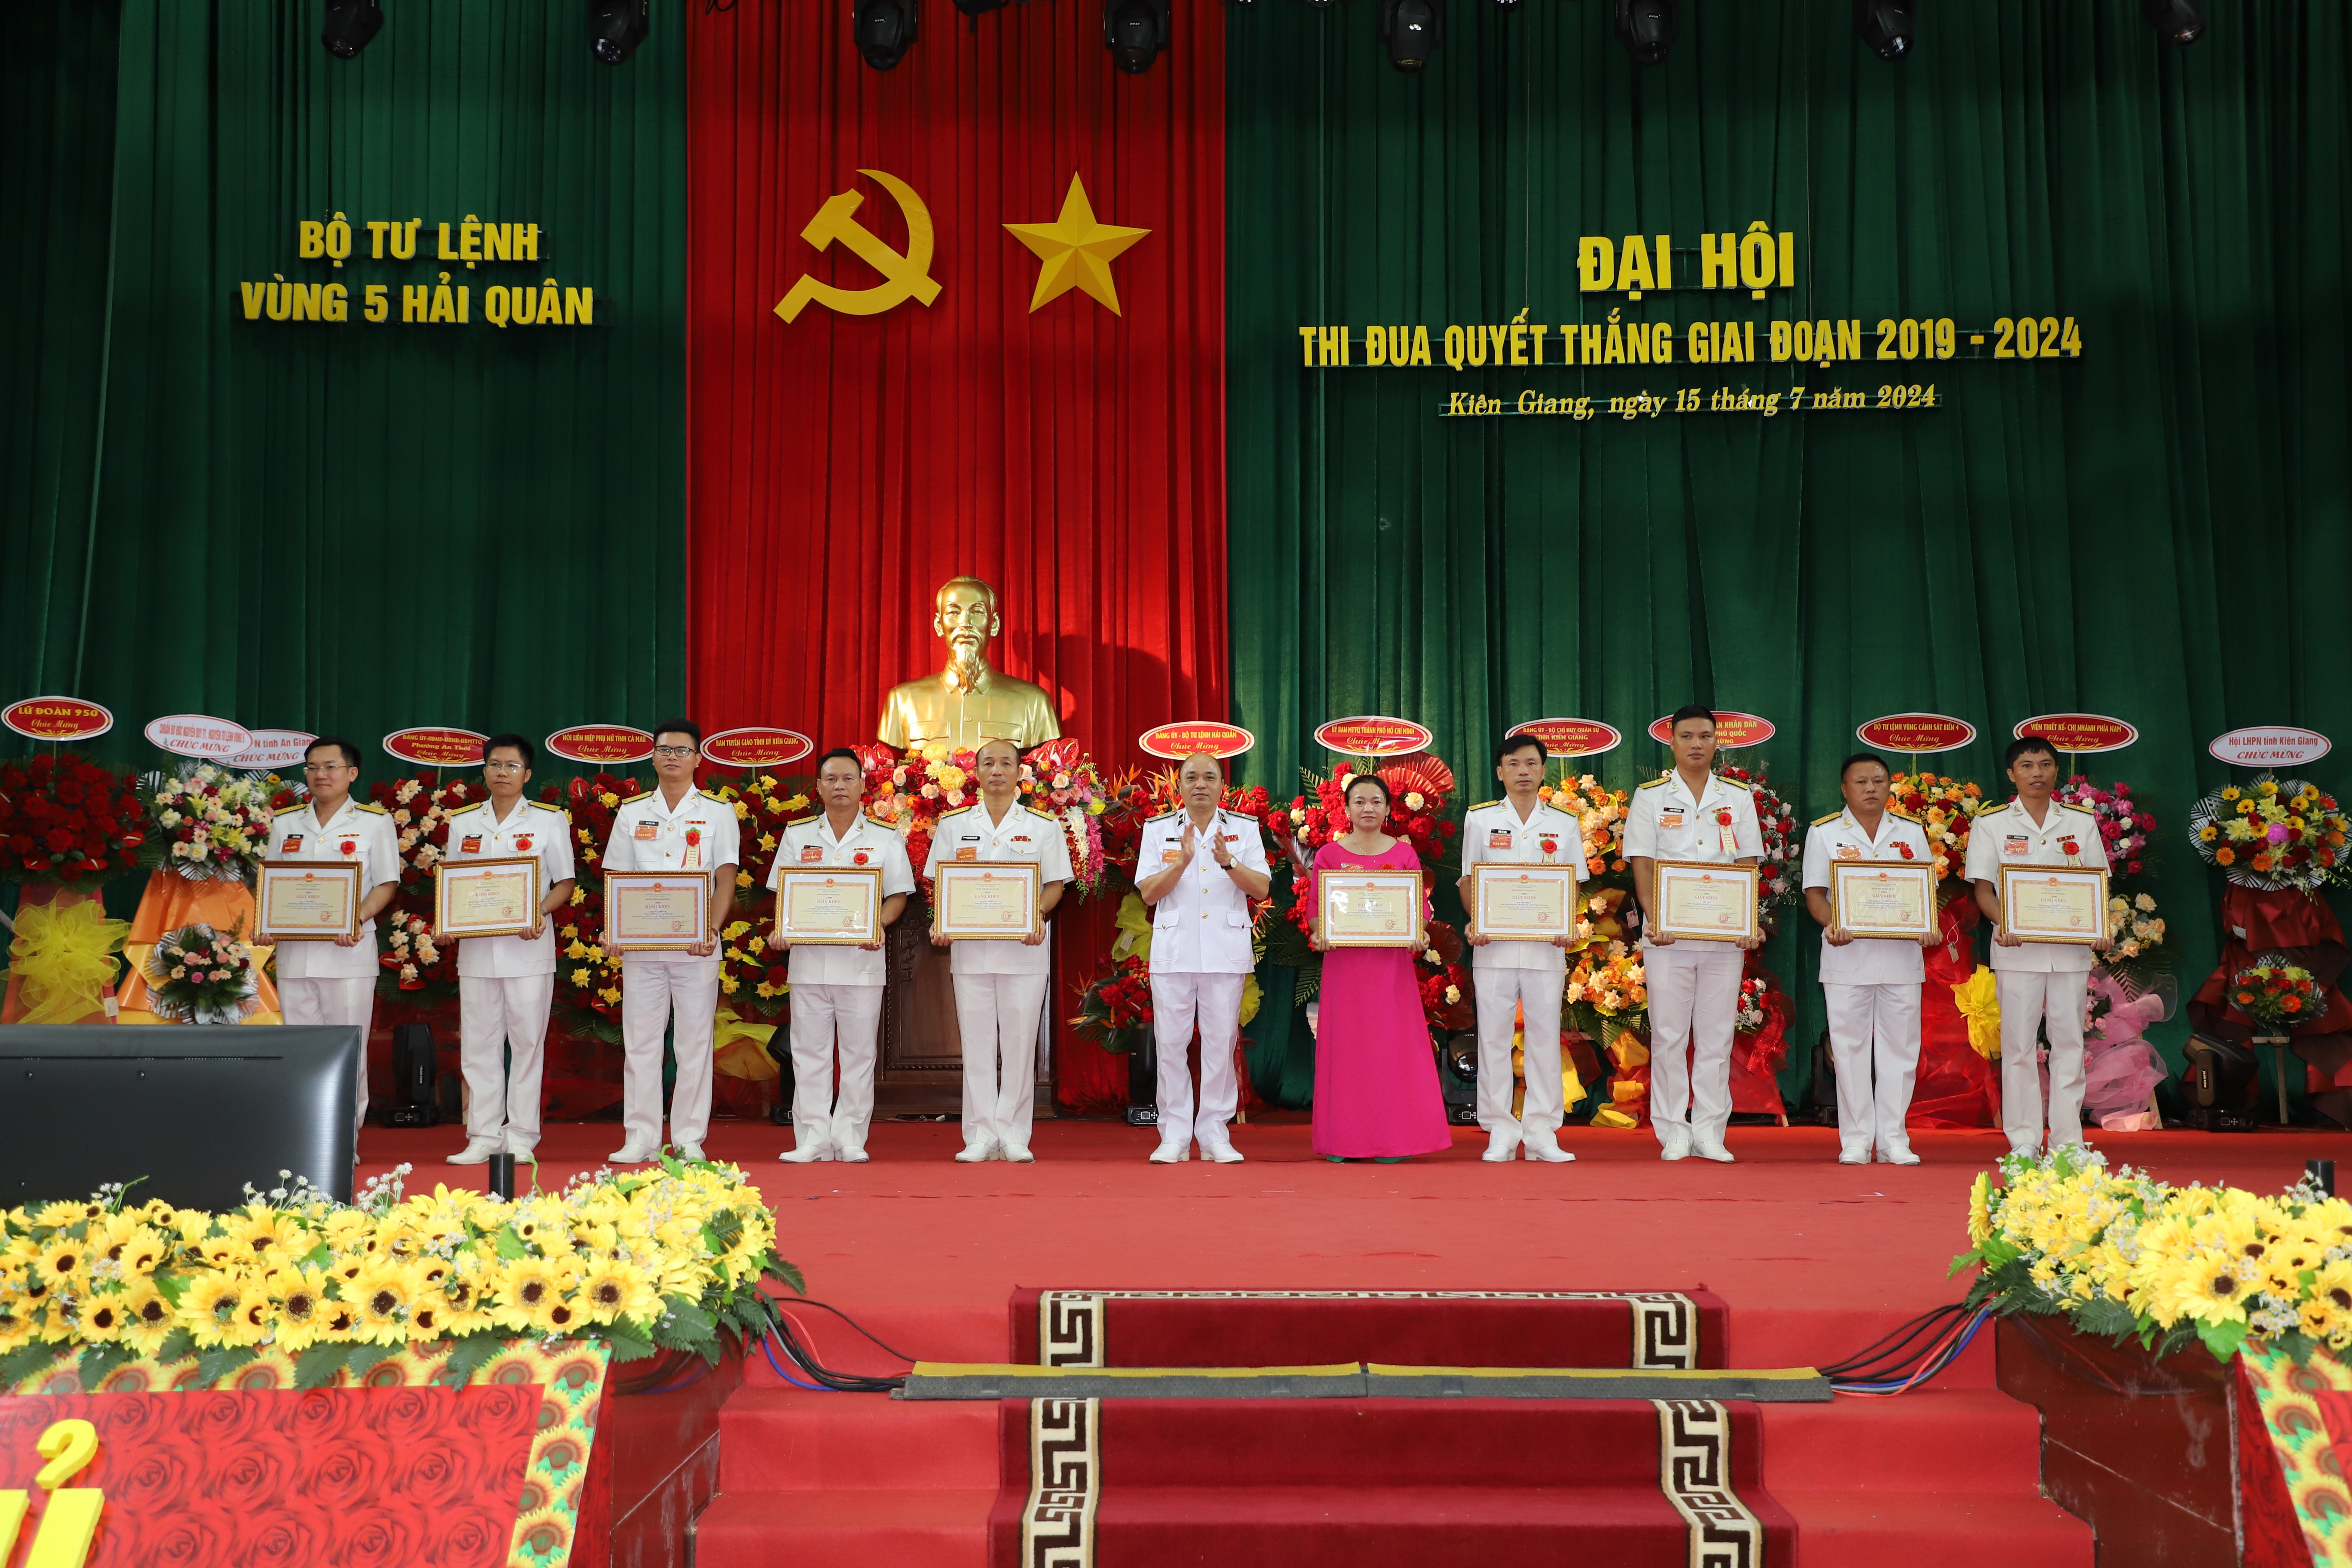 Thủ trưởng Bộ Tư lệnh Hải quân trao thưởng cho các tập thể và cá nhân có thành tích xuất sắc tiêu biểu trong thực hiện phong trào thi đua quyết thắng